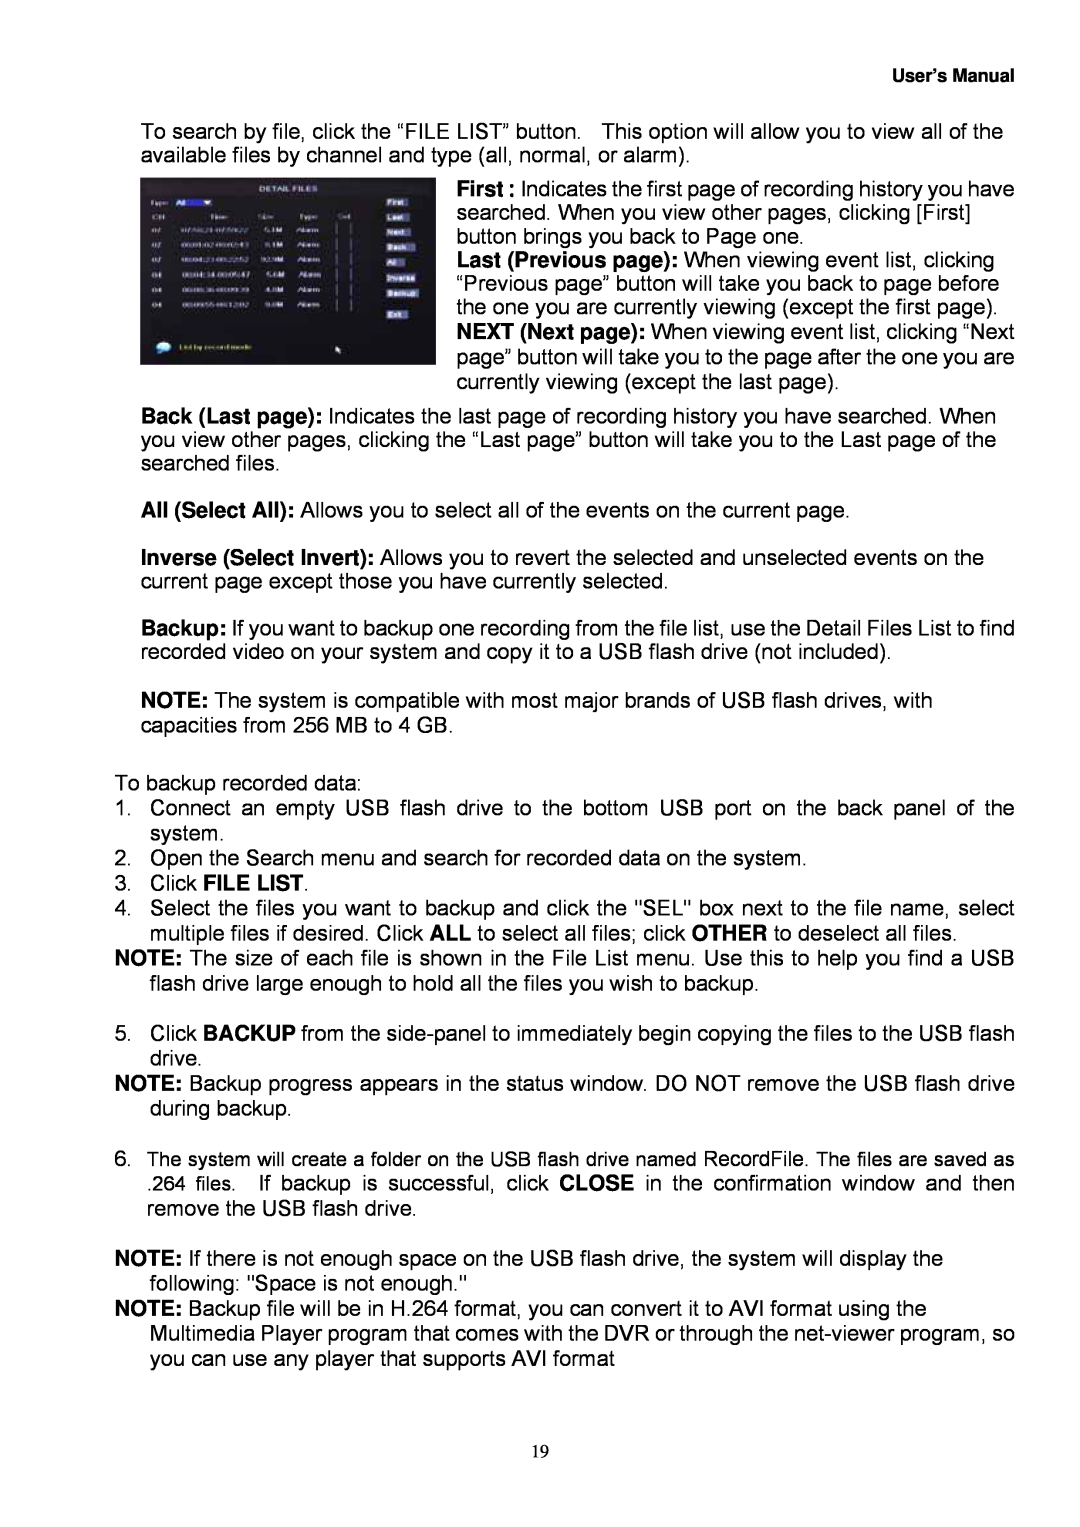 Night Owl Optics Zeus-DVR10, Zeus-DVR5, Digital Video Recorder manual Click FILE LIST 